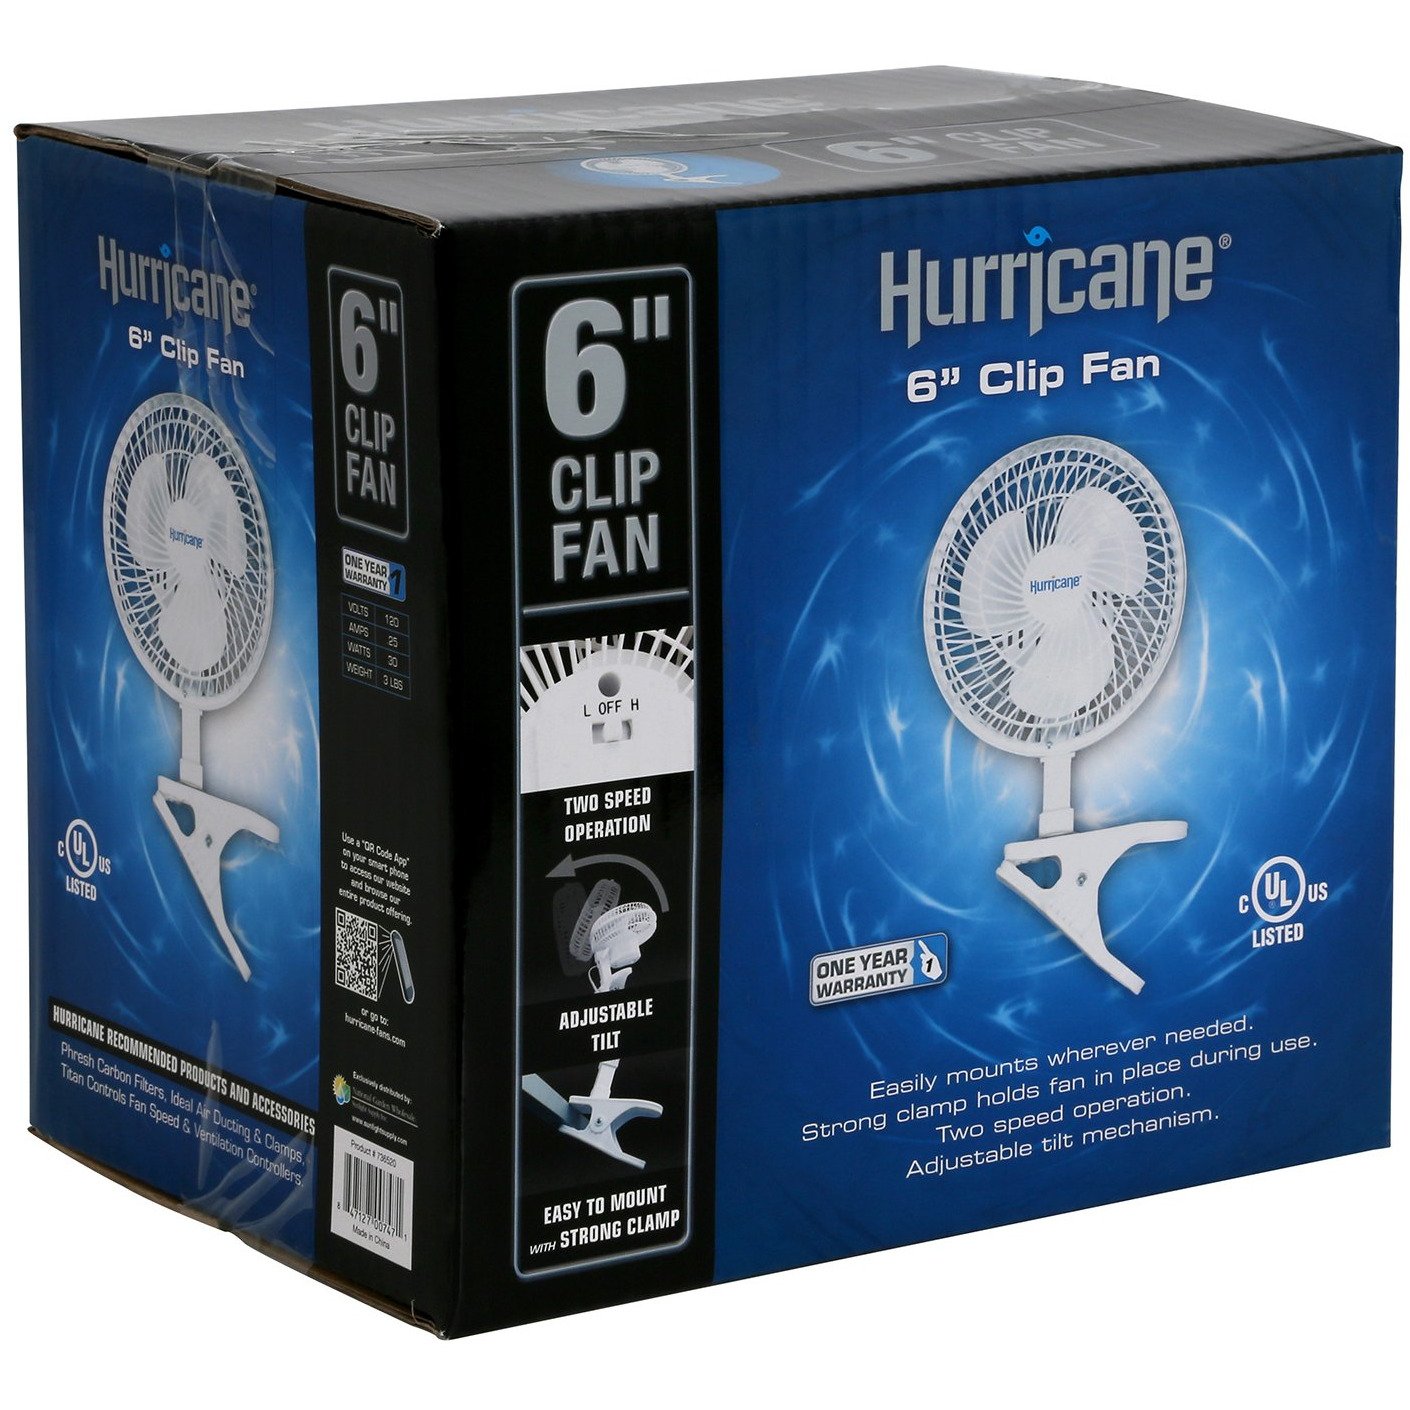 Hurricane Clip Fan 6"